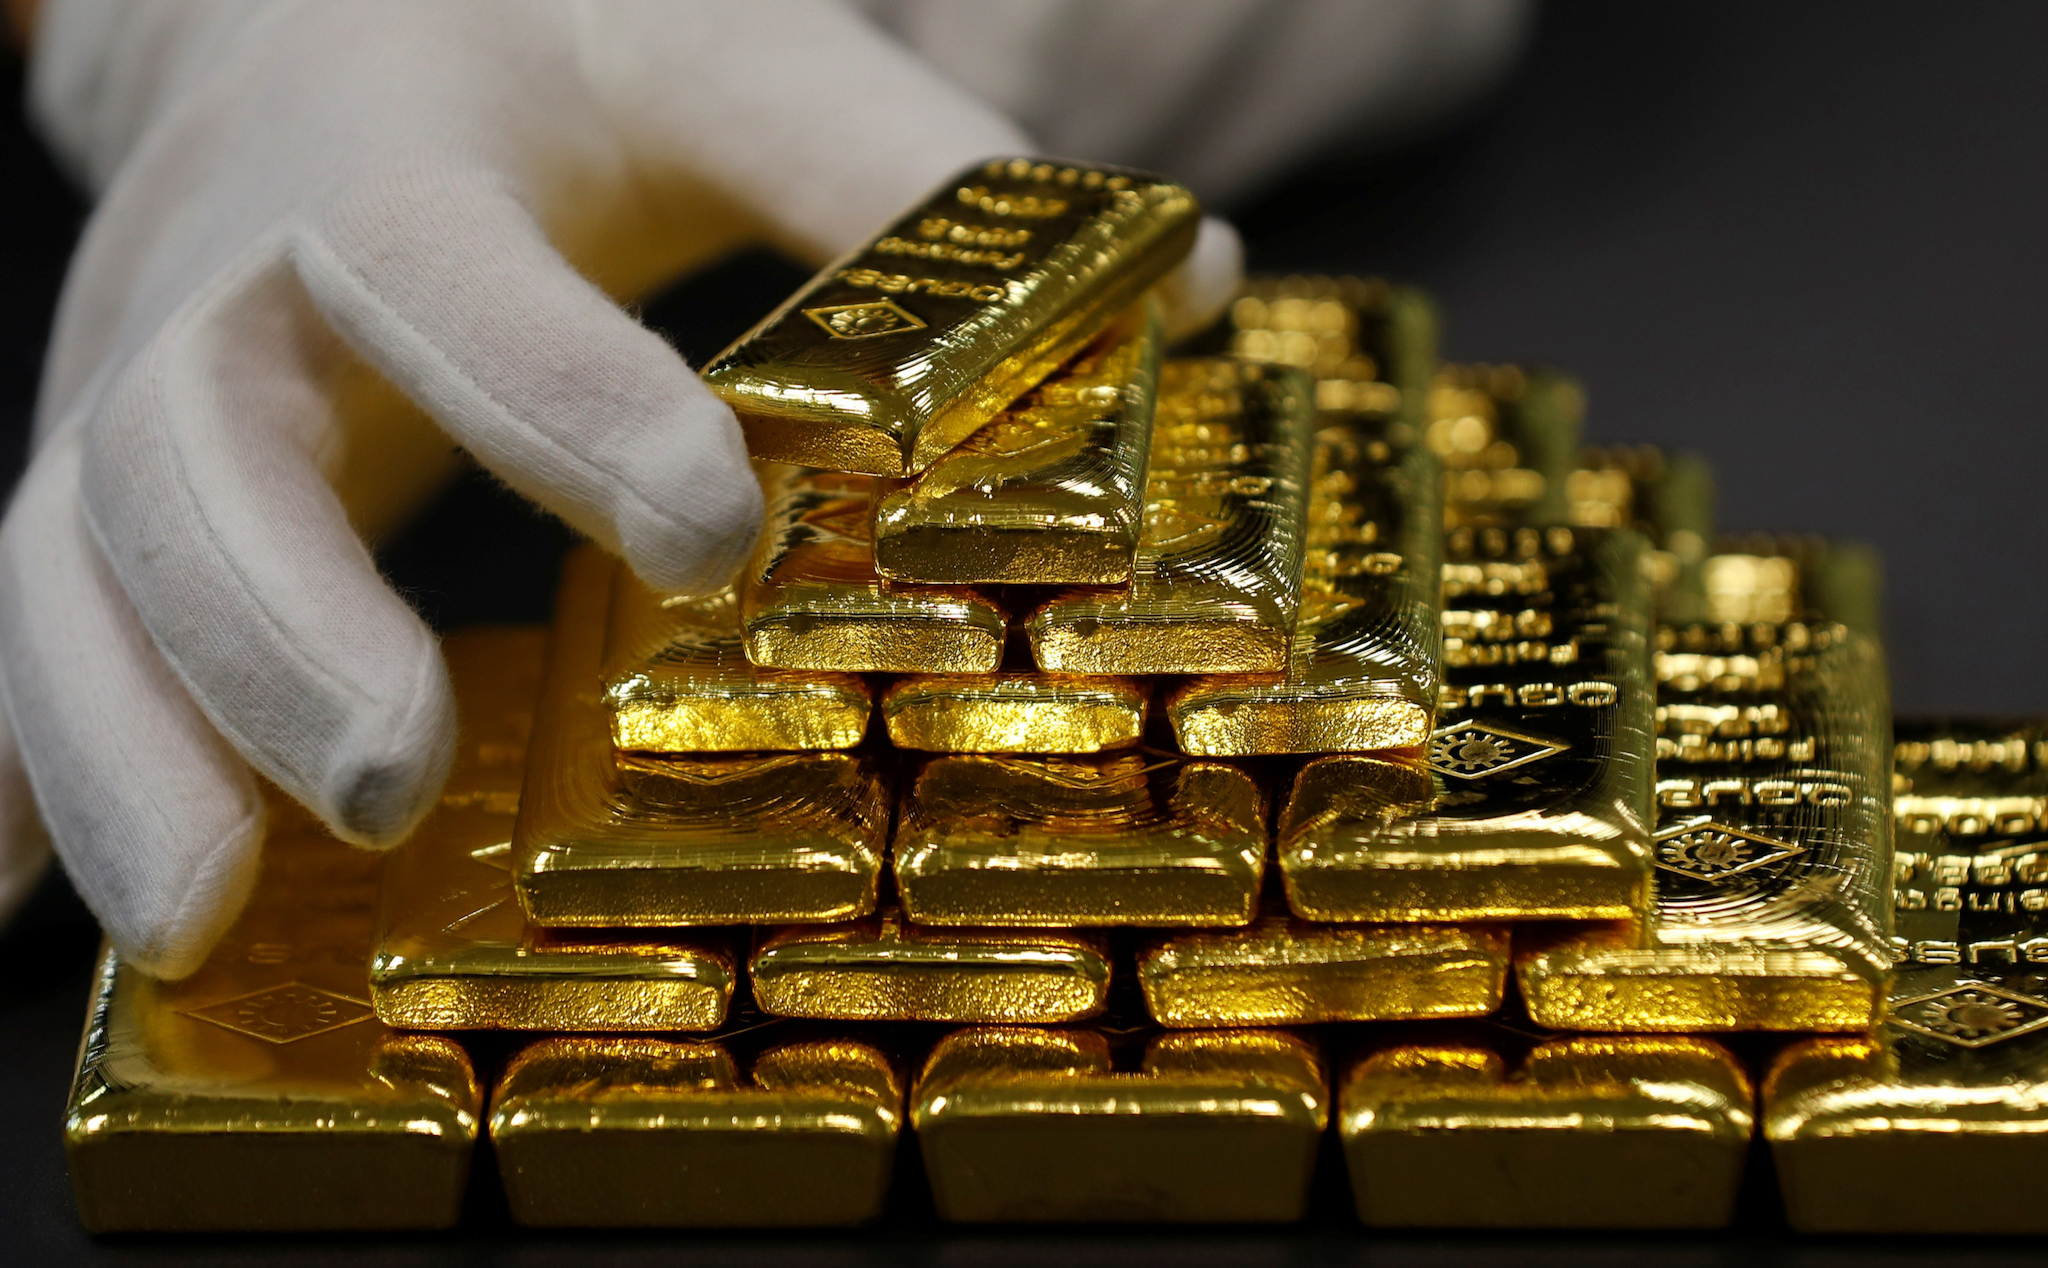 Trữ lượng vàng của Nga có thể sẽ cạn kiệt trong 20 năm tới